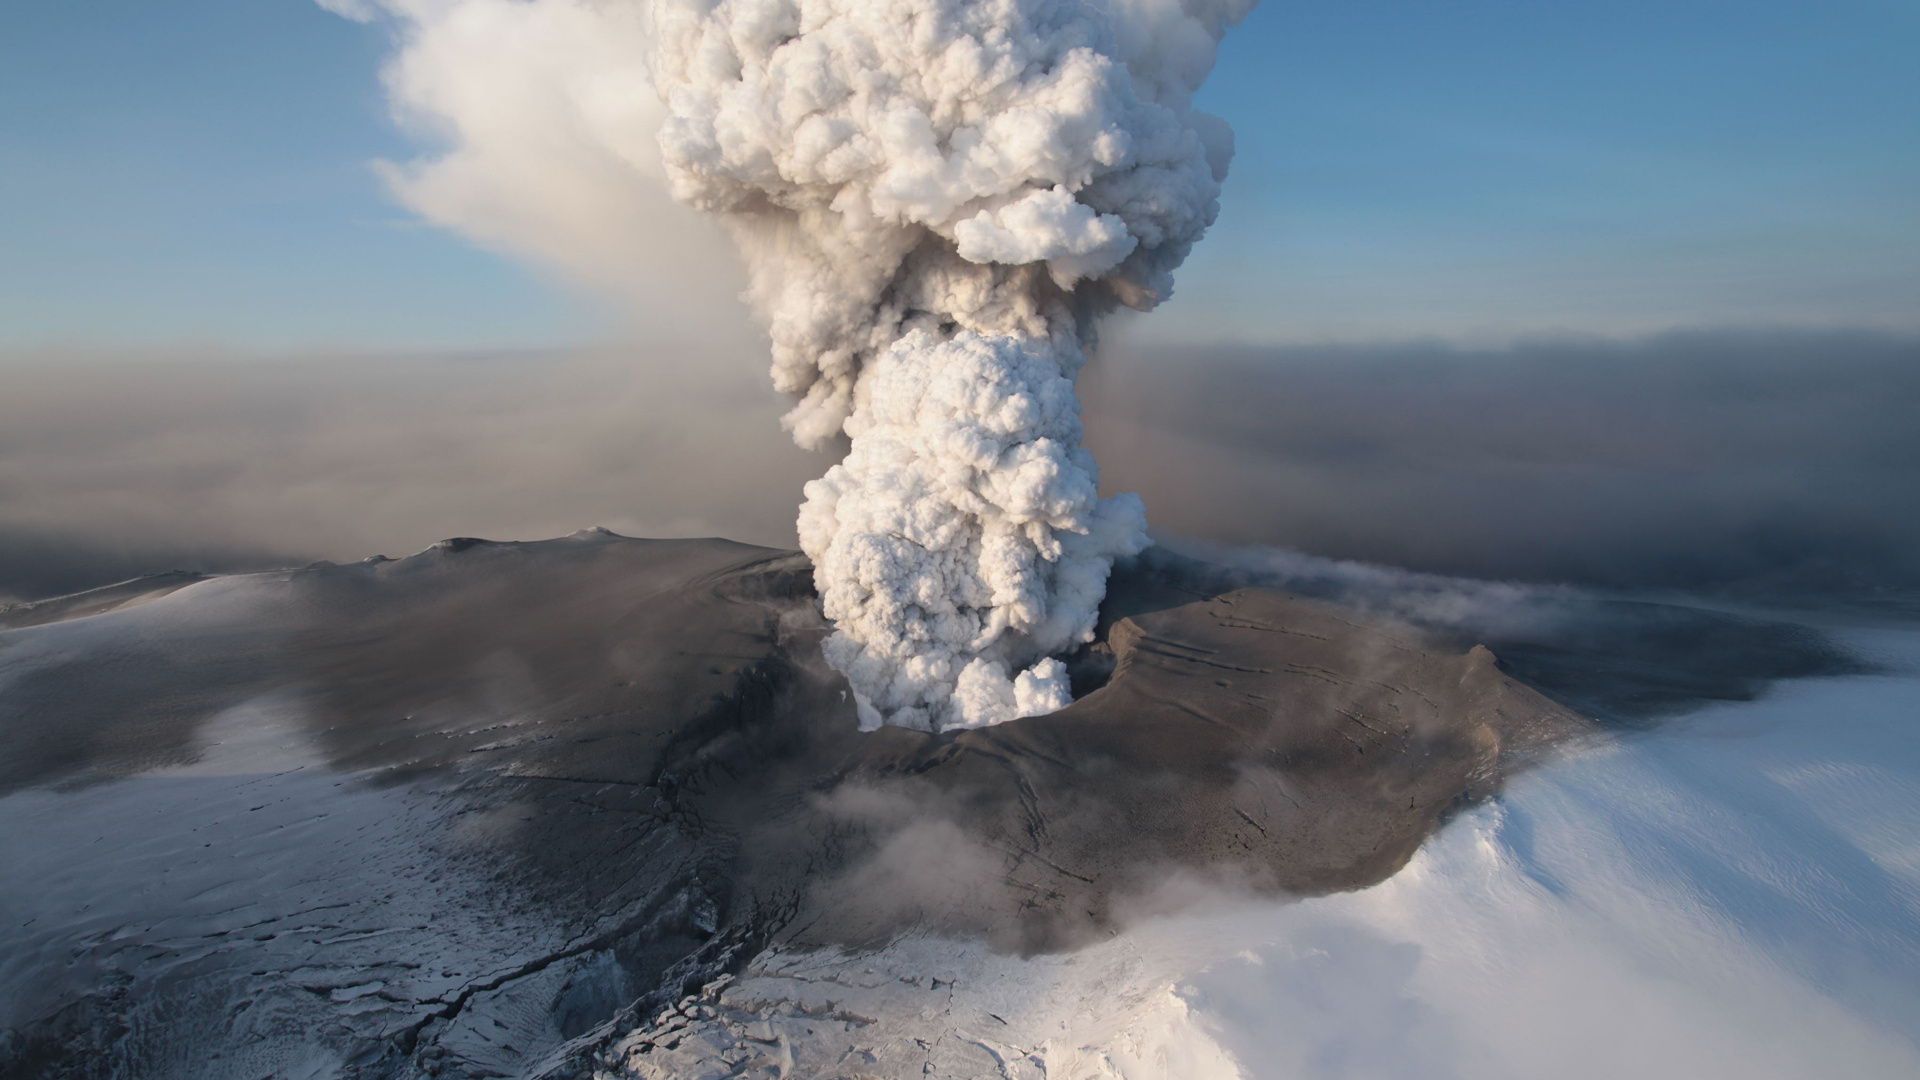 Обои 2010 извержения Eyjafjallajkull, вулкан, вулканический пепел, купол лавы, вулканического рельефа в разрешении 1920x1080